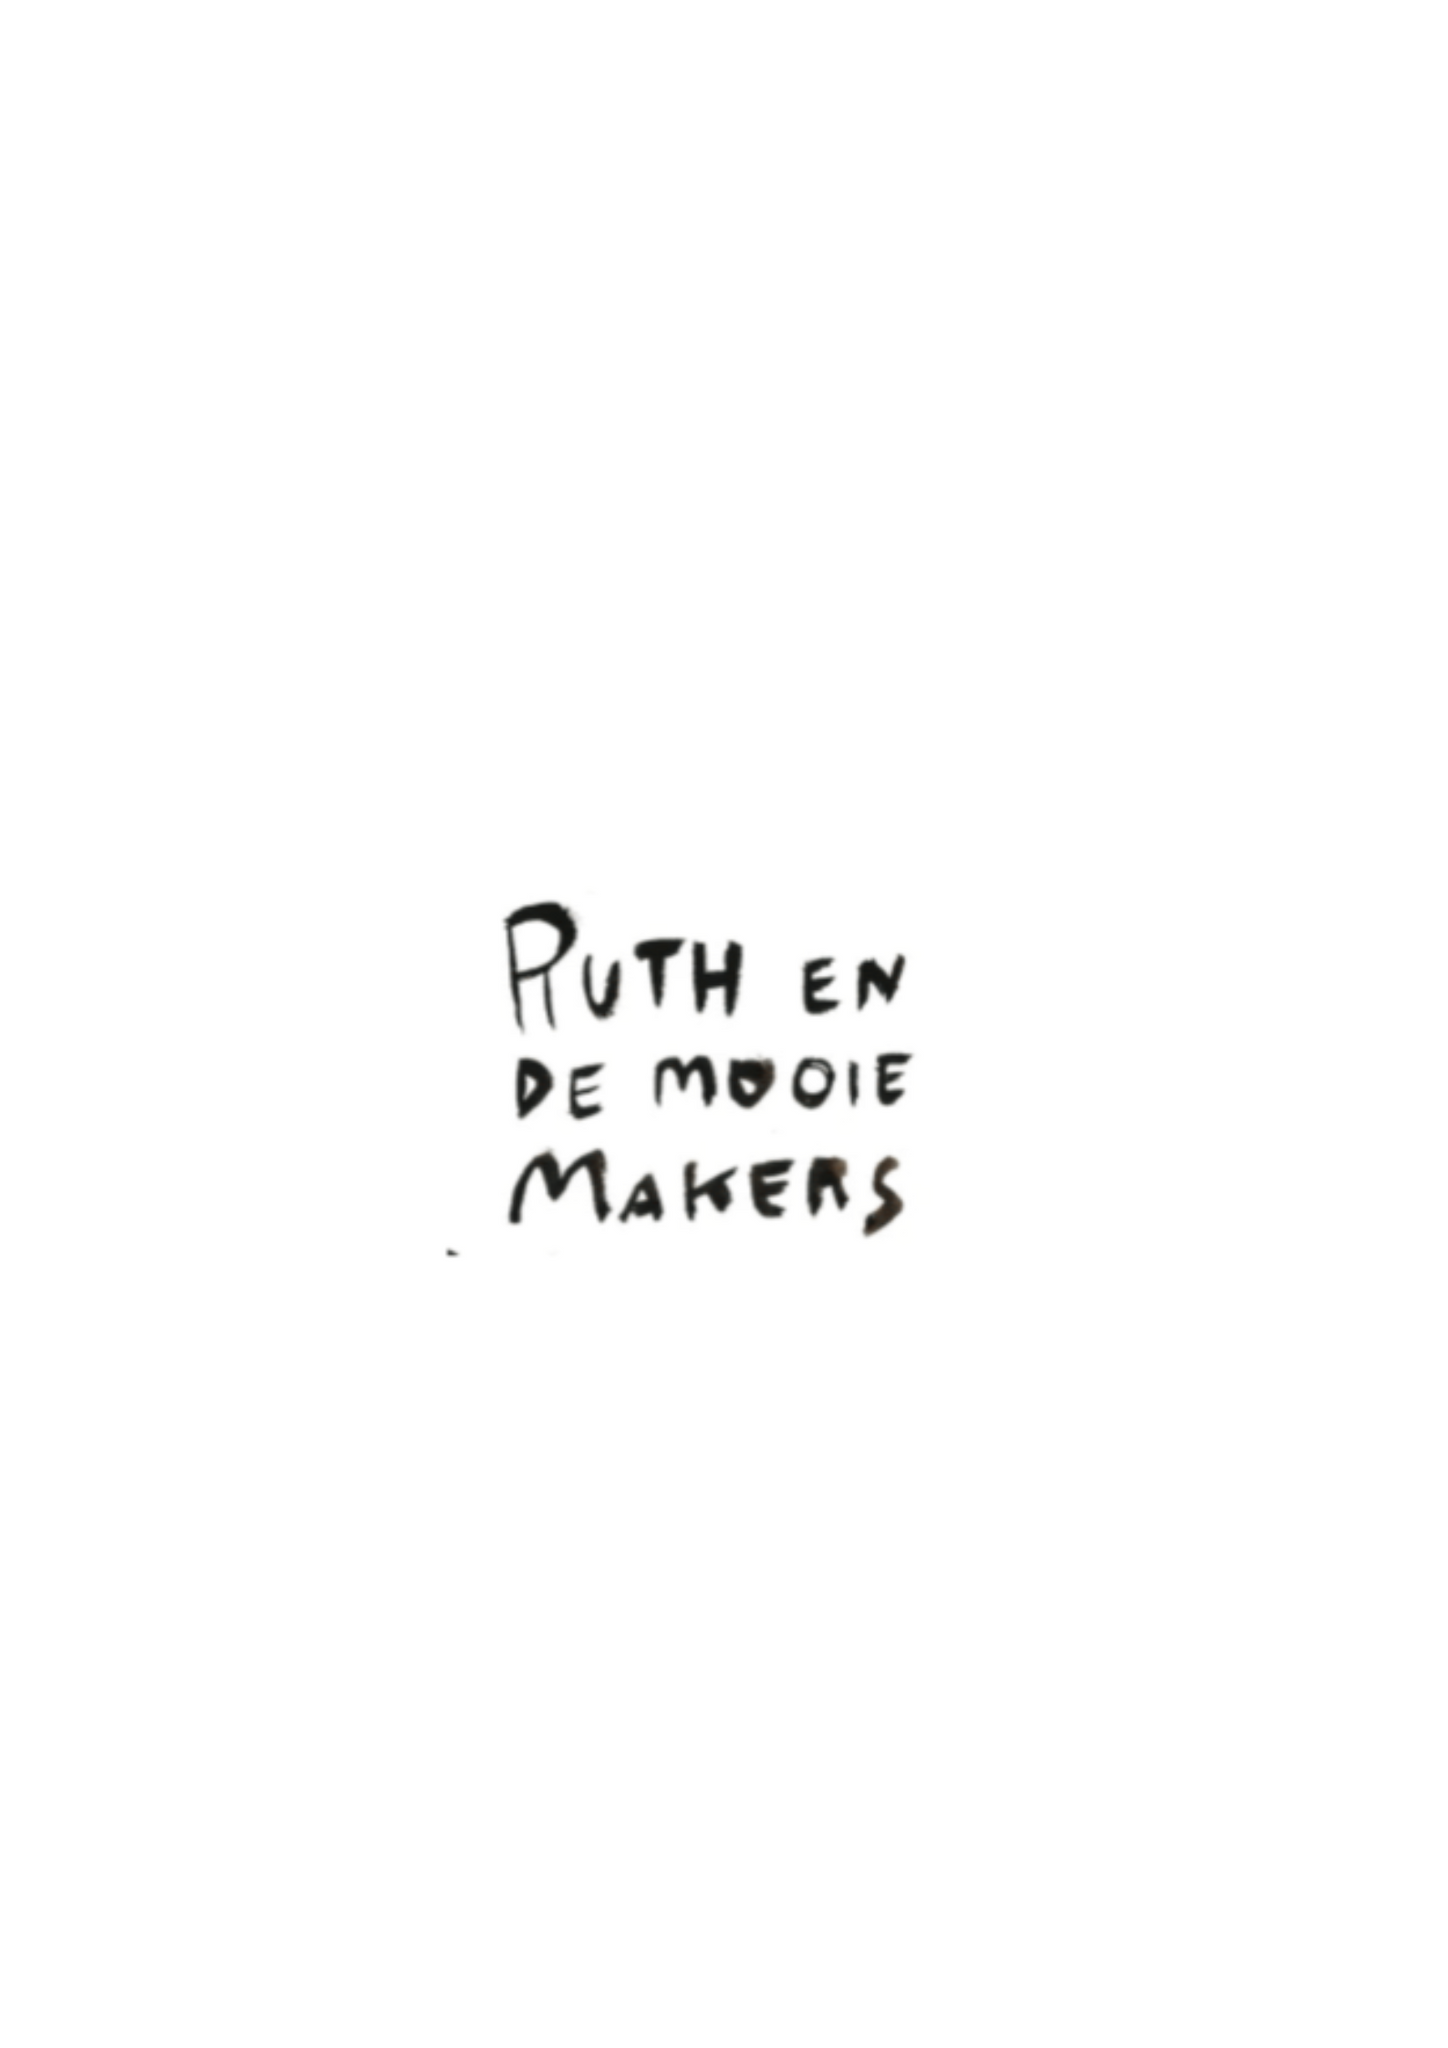 Featured in "Ruth En De Mooie Makers"